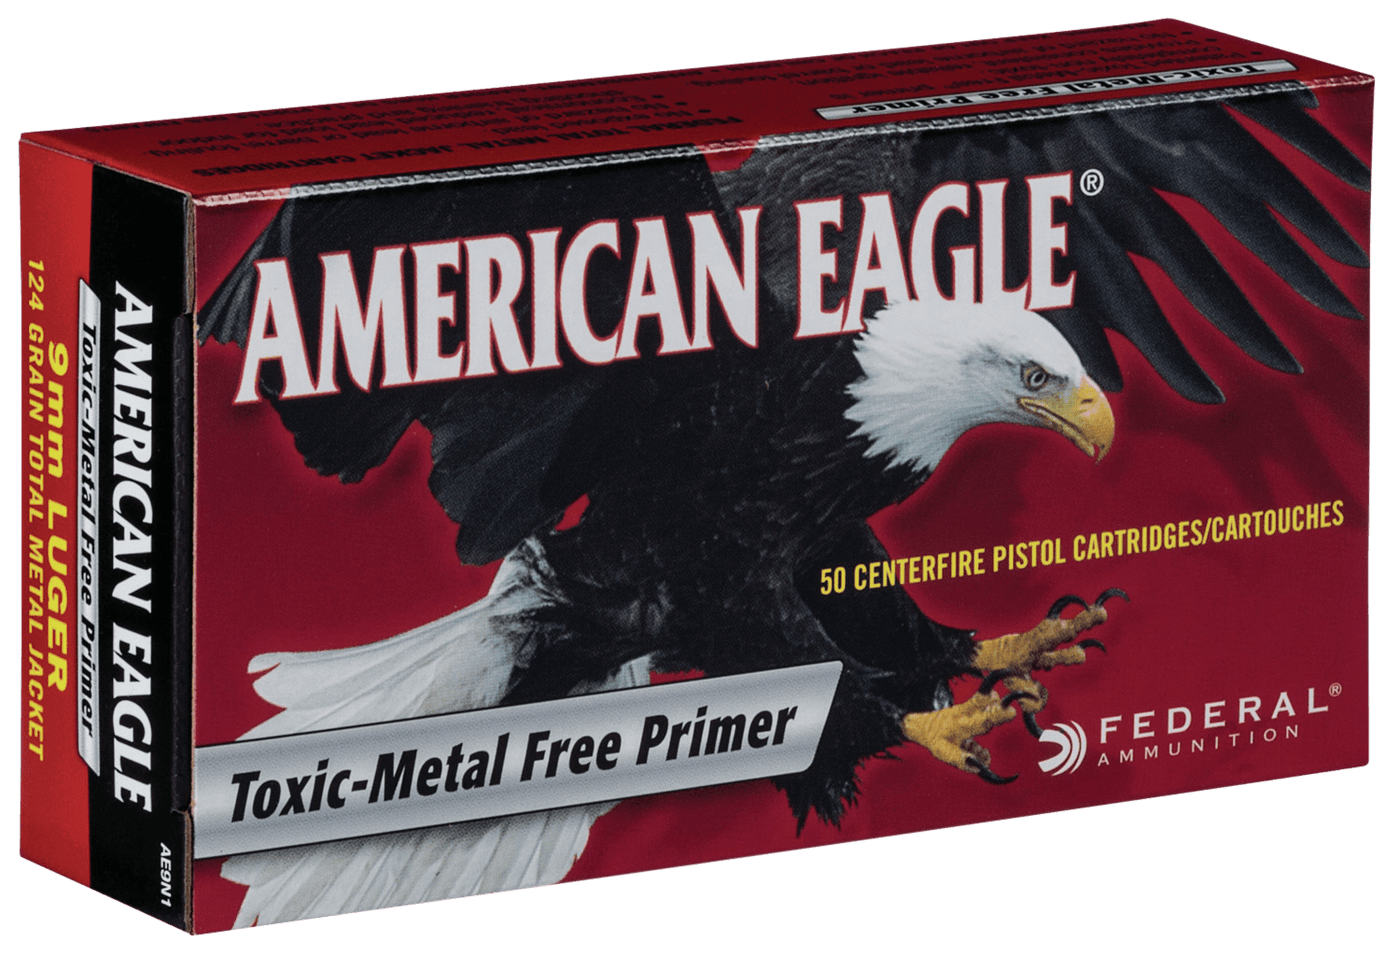 Federal Federal American Eagle Pistol Ammo 38 Spl 130 Gr. Full Metal Jacket 50 Rd. Ammo